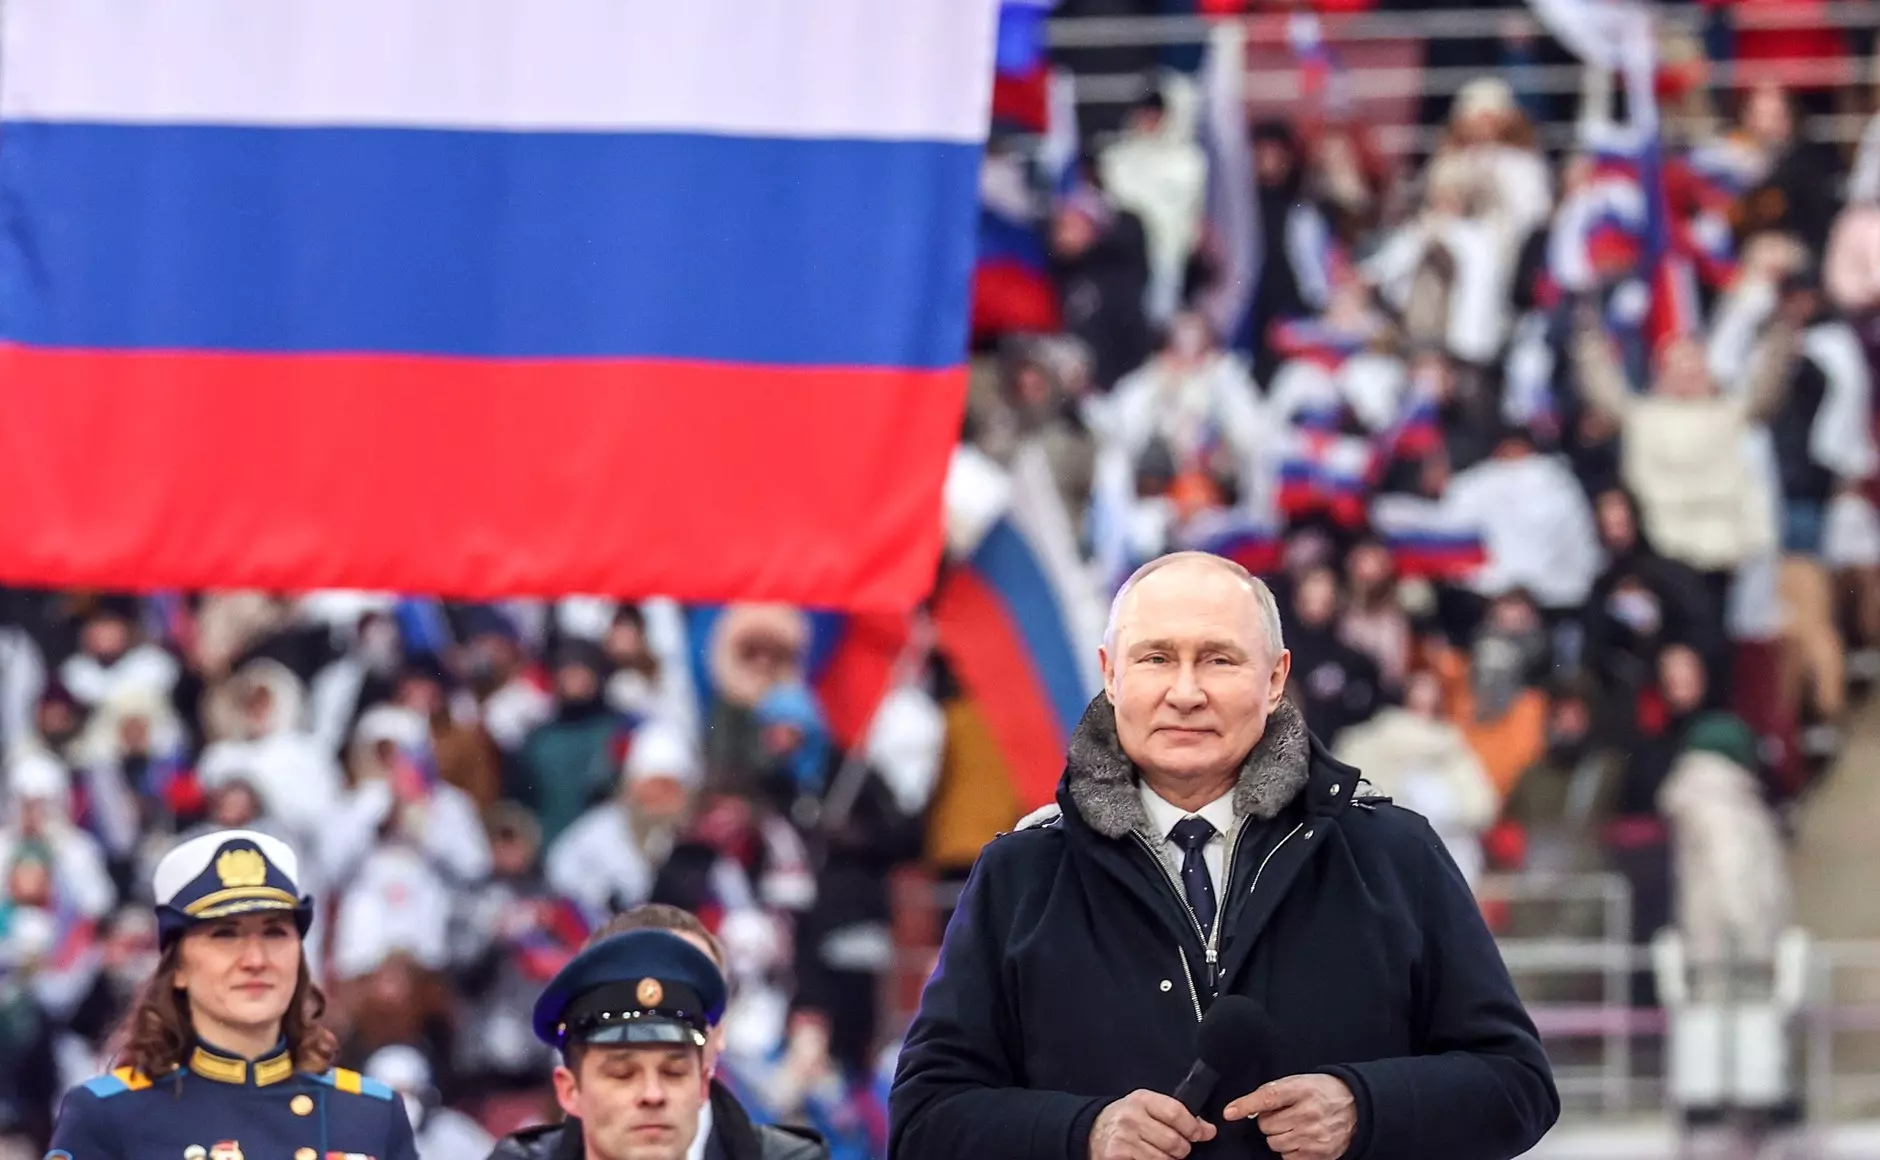 Президент Владимир Путин поздравил россиянок с Международным женским днем